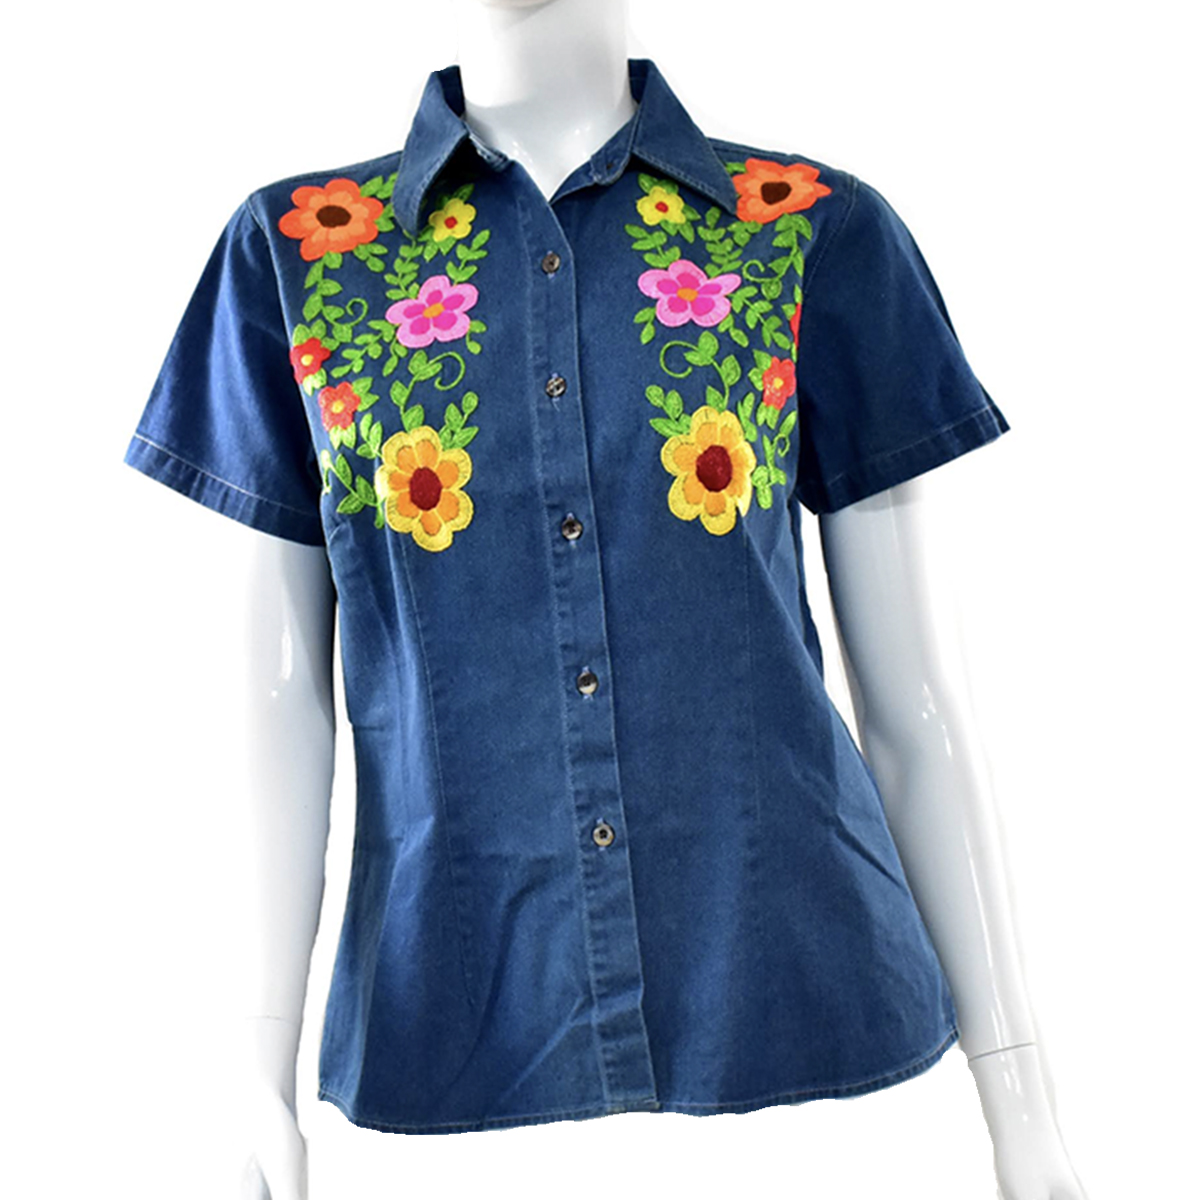 Blusa de mezclilla de manga corta con flores de colores, talla M. - Tienda Hecho Veracruz